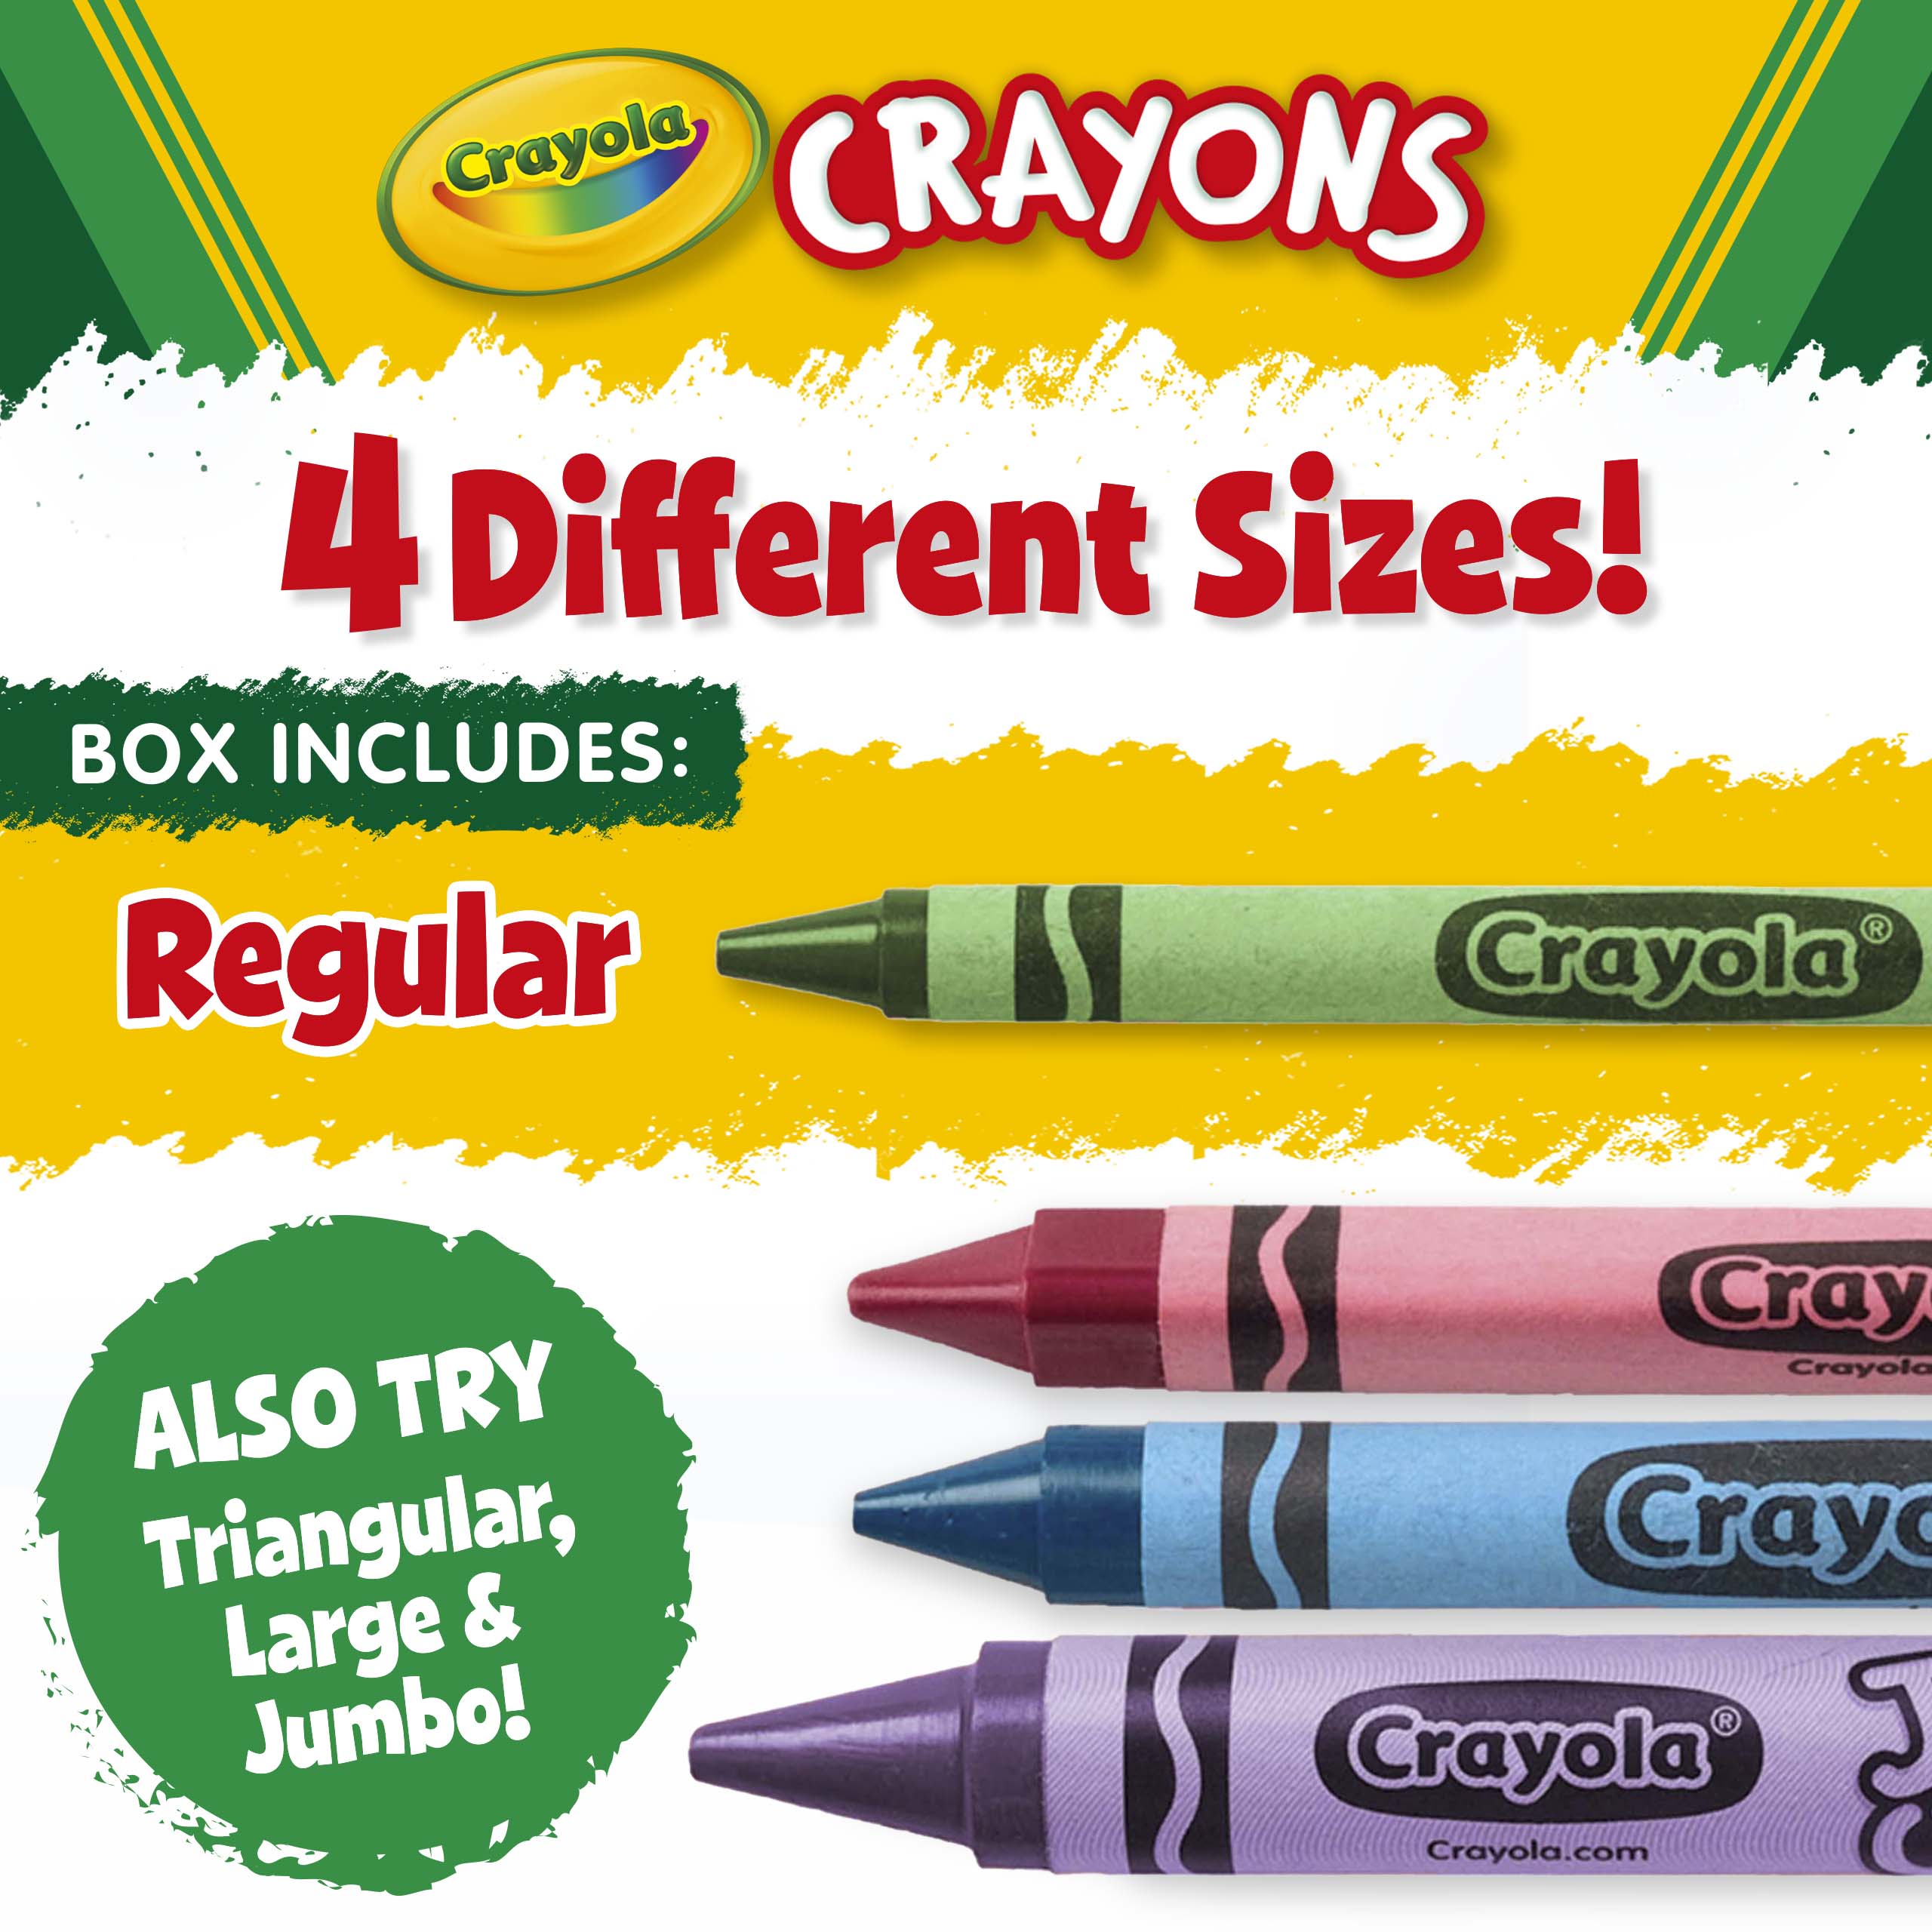 Crayola 12 Count Bulk Crayons, Green